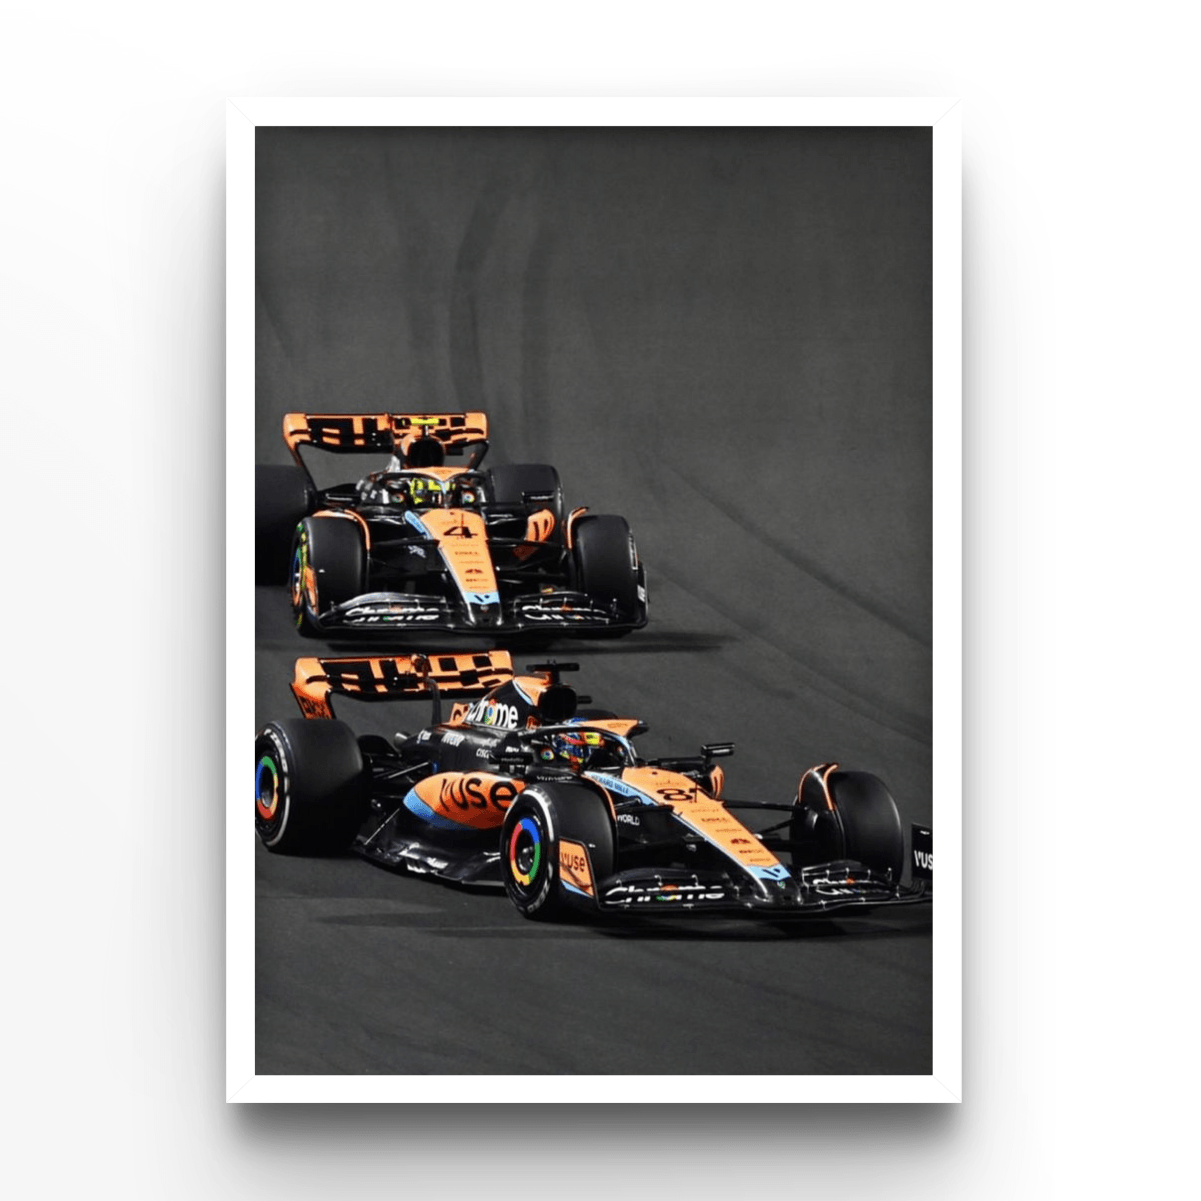 McLaren Drivers - A4, A3, A2 Posters Base - Poster Print Shop / Art Prints / PostersBase